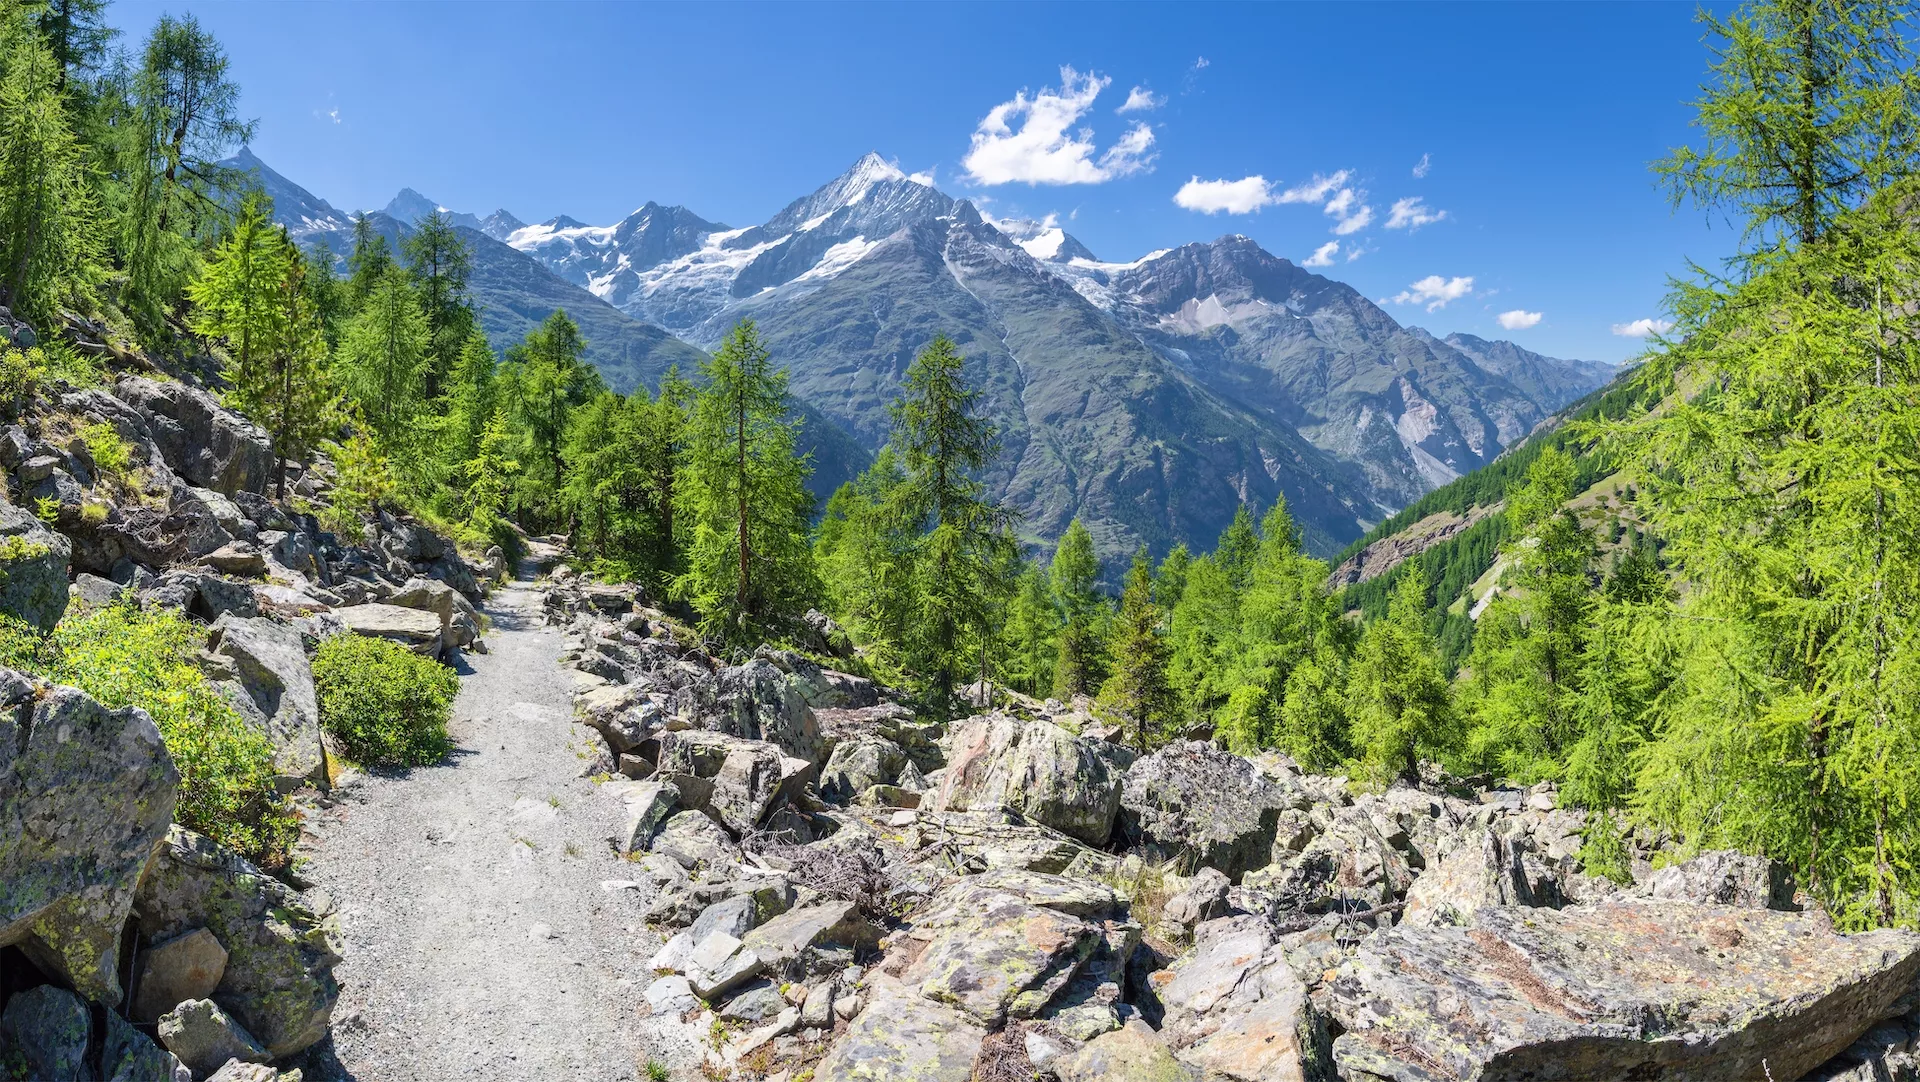 Walliser-alpernes bjergtoppe Bishorn, Weisshorn, Schalihorn og Rothorn over Mattertal-dalen